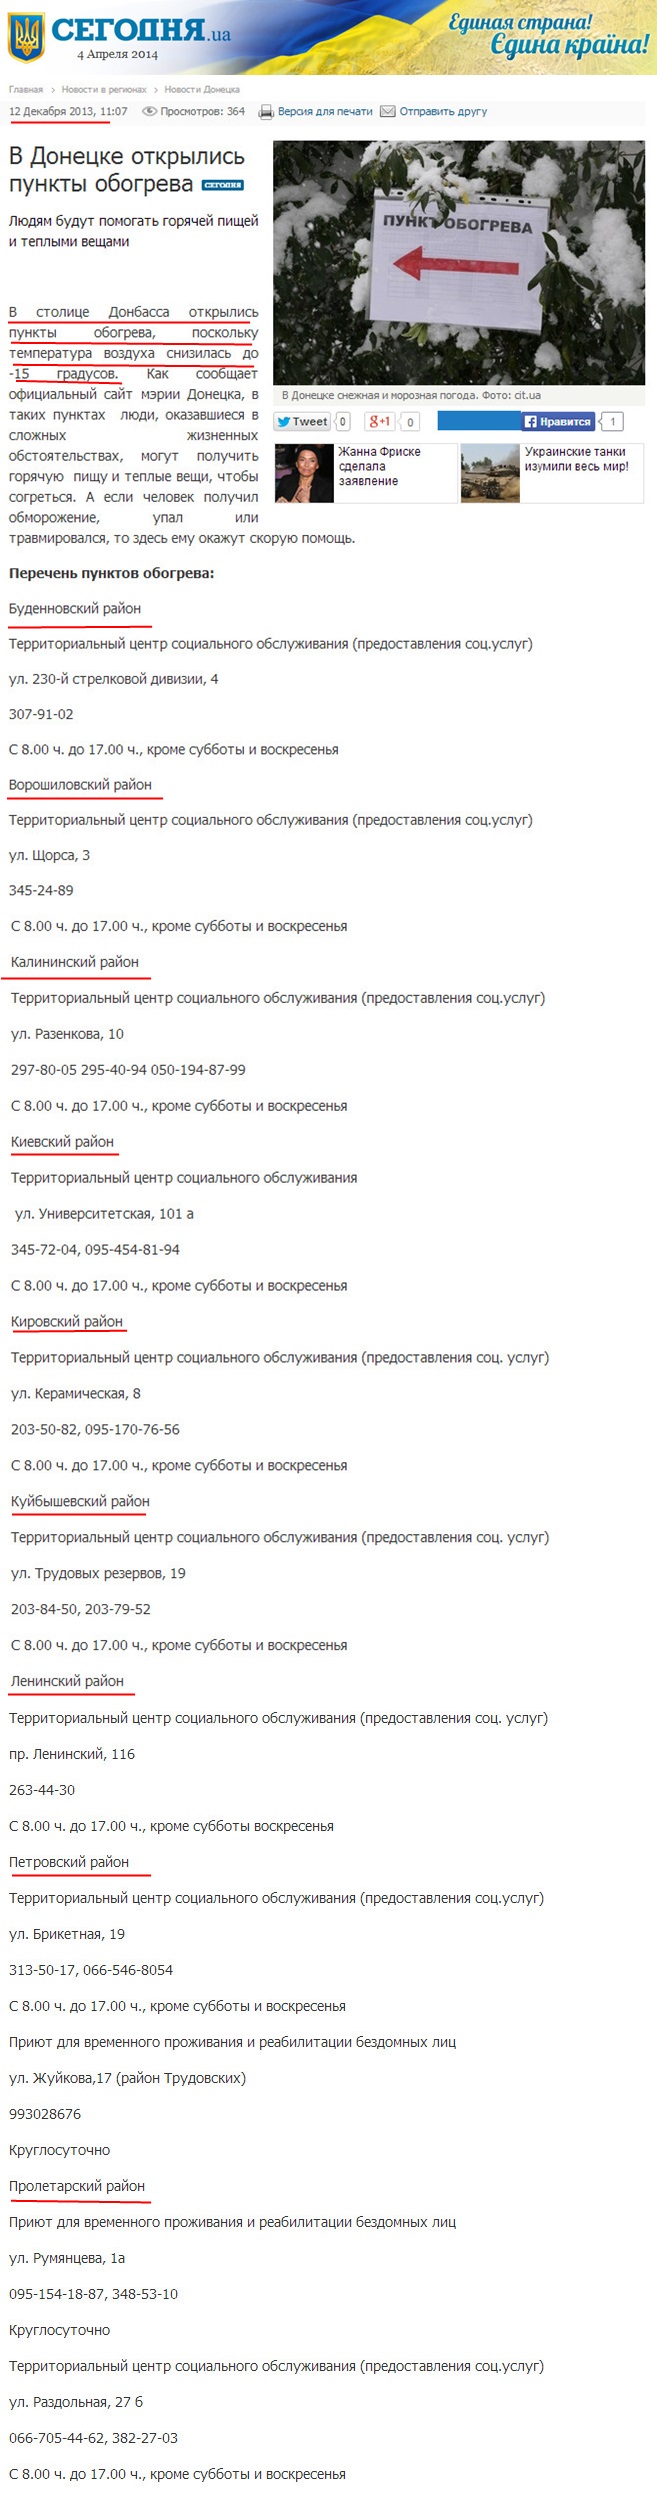 http://www.segodnya.ua/regions/donetsk/v-donecke-otkrylis-punkty-obogreva-482231.html